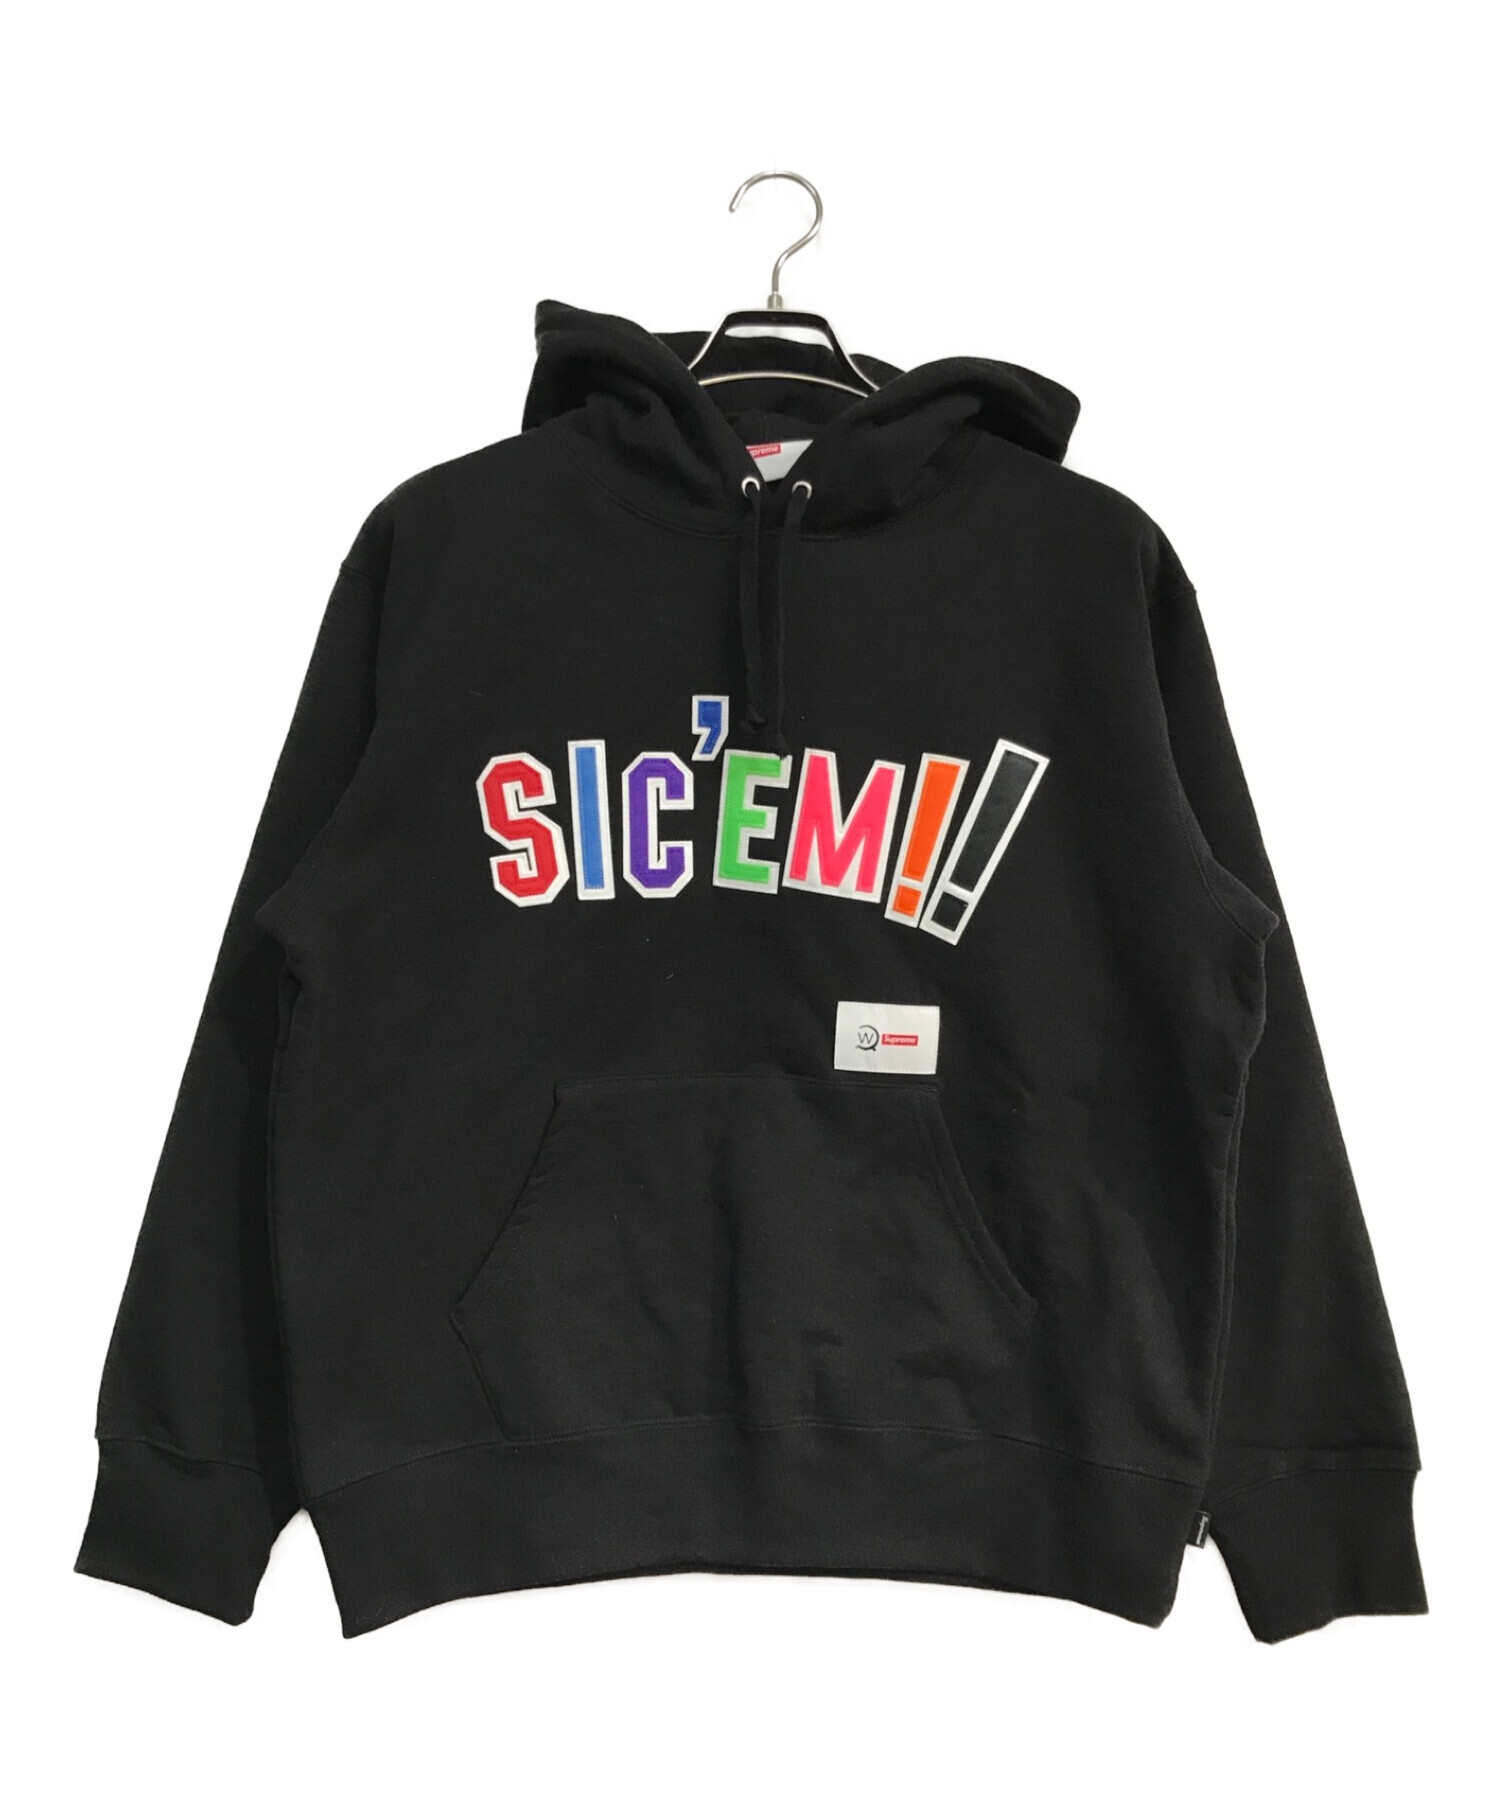 WTAPS (ダブルタップス) SUPREME (シュプリーム) Sic'em! Hooded Sweatshirt ブラック サイズ:Ｓ